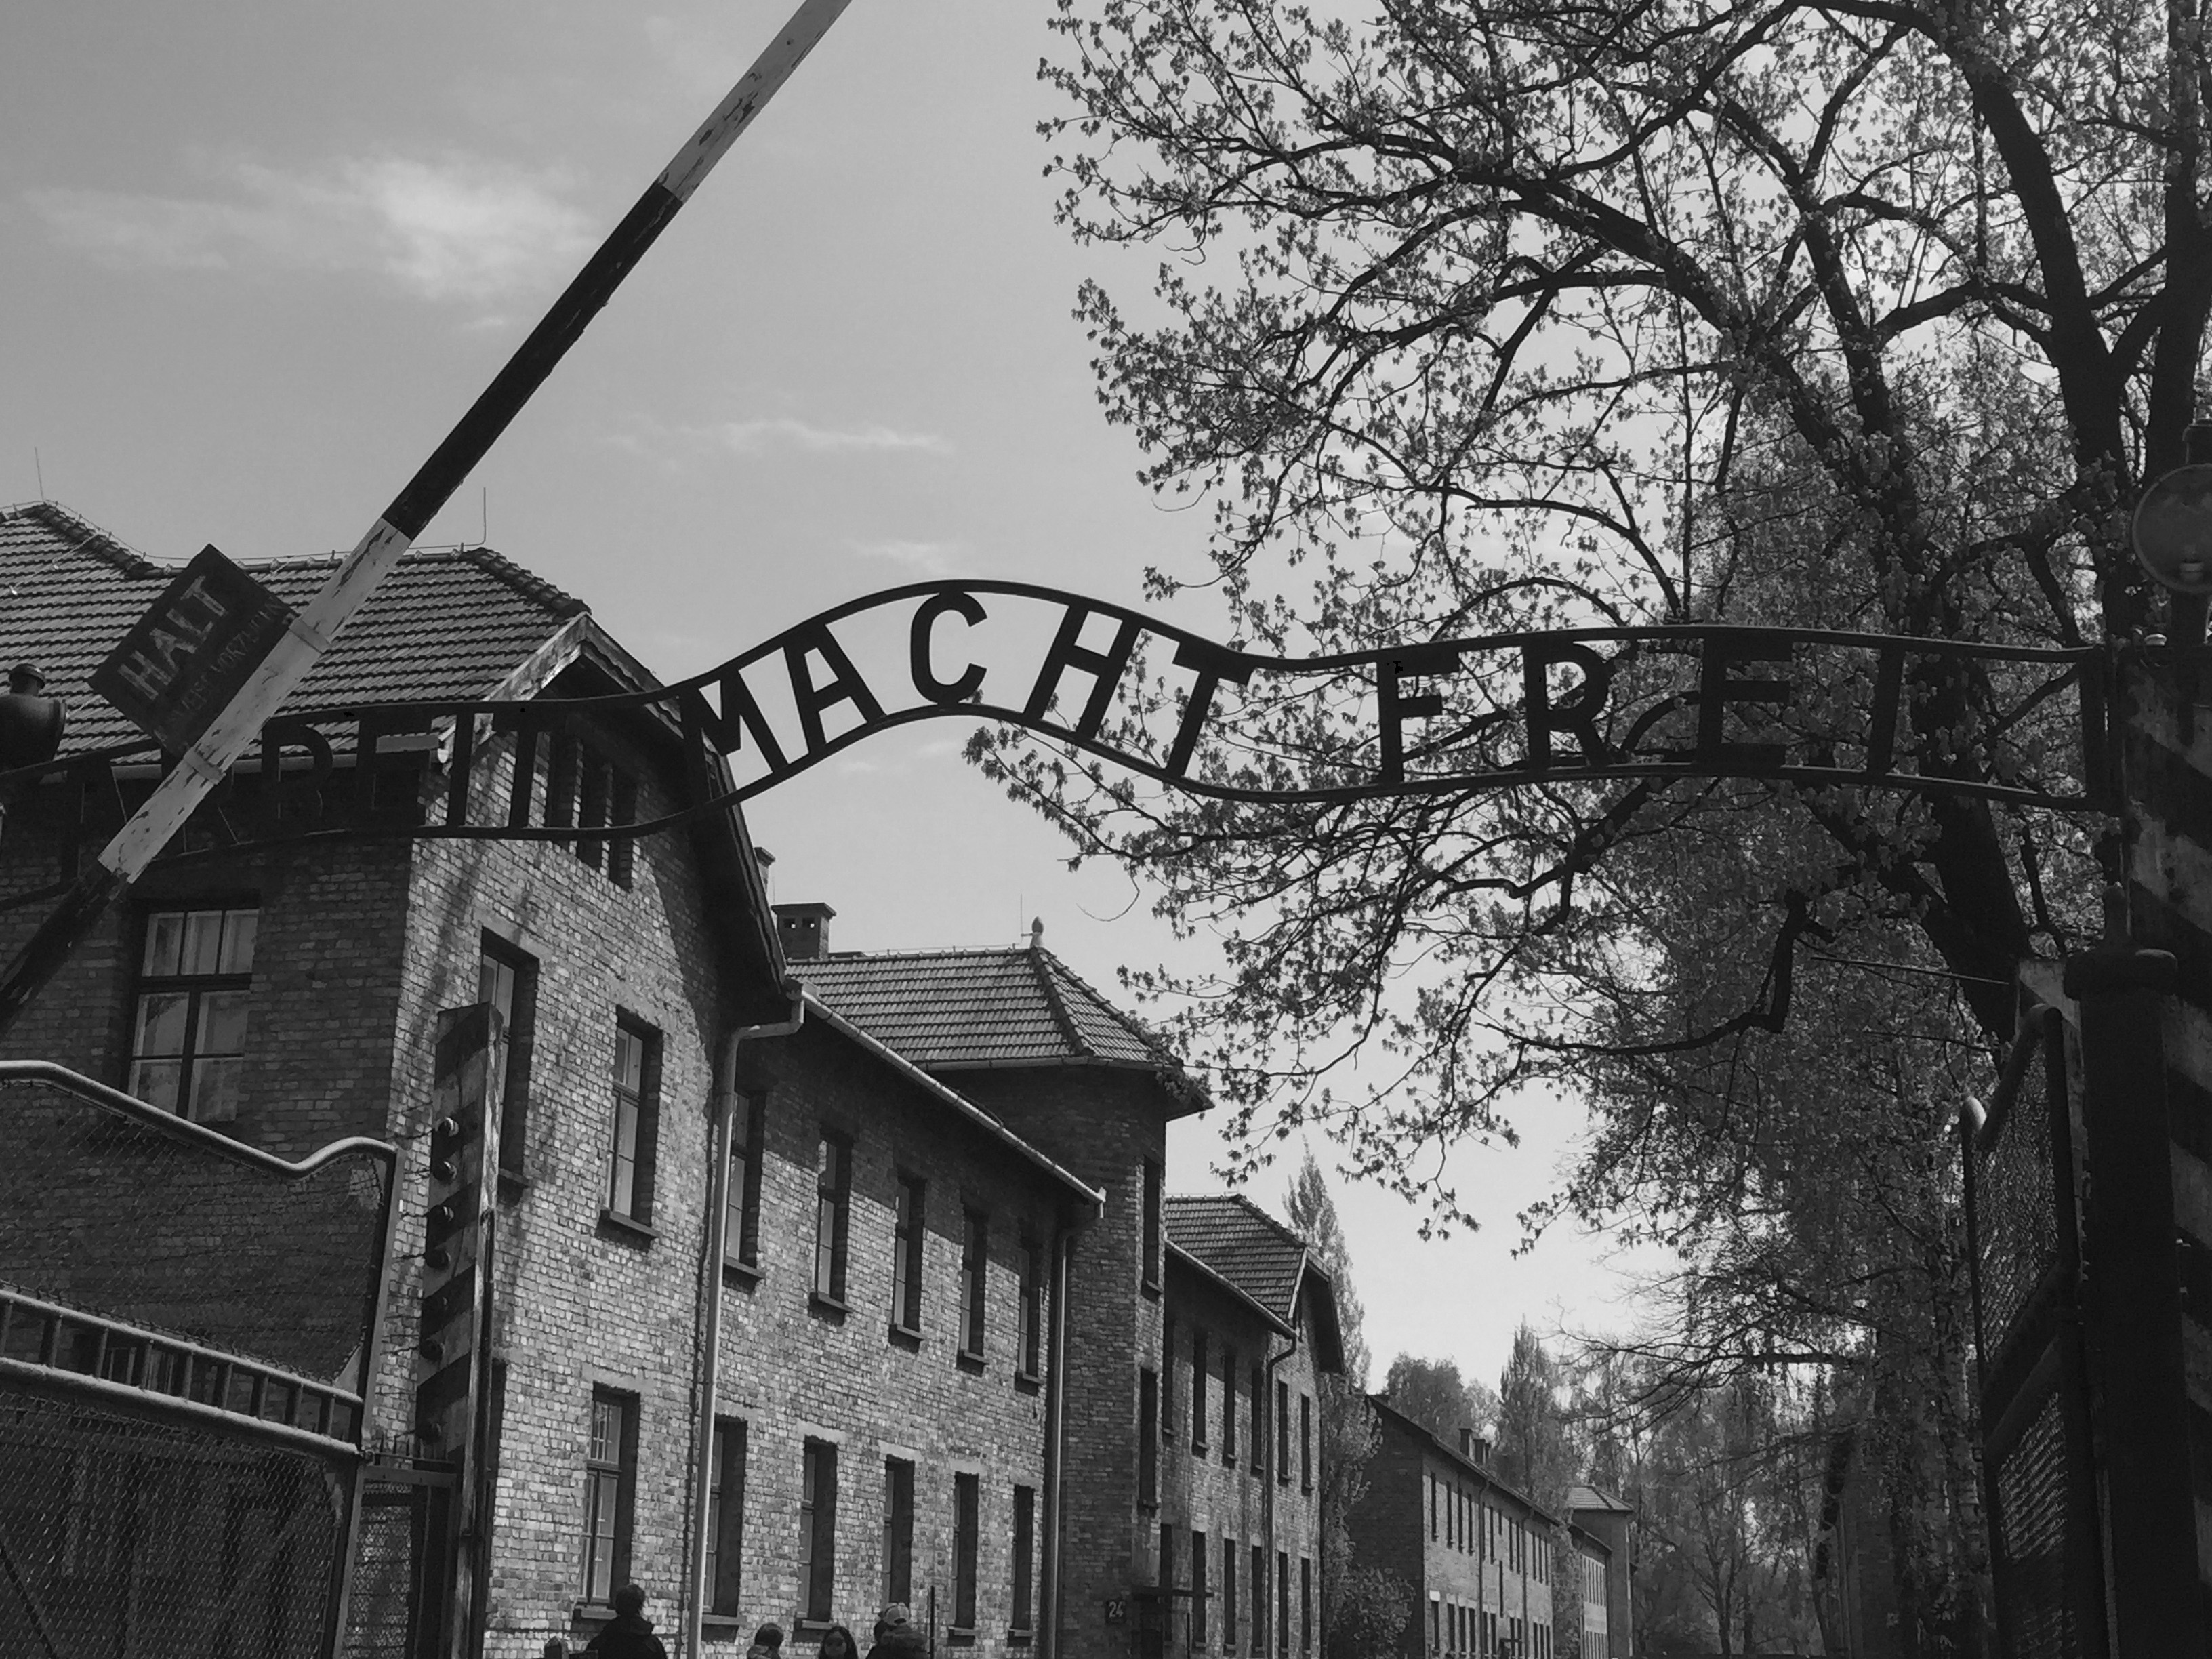 Auschwitz Memorial